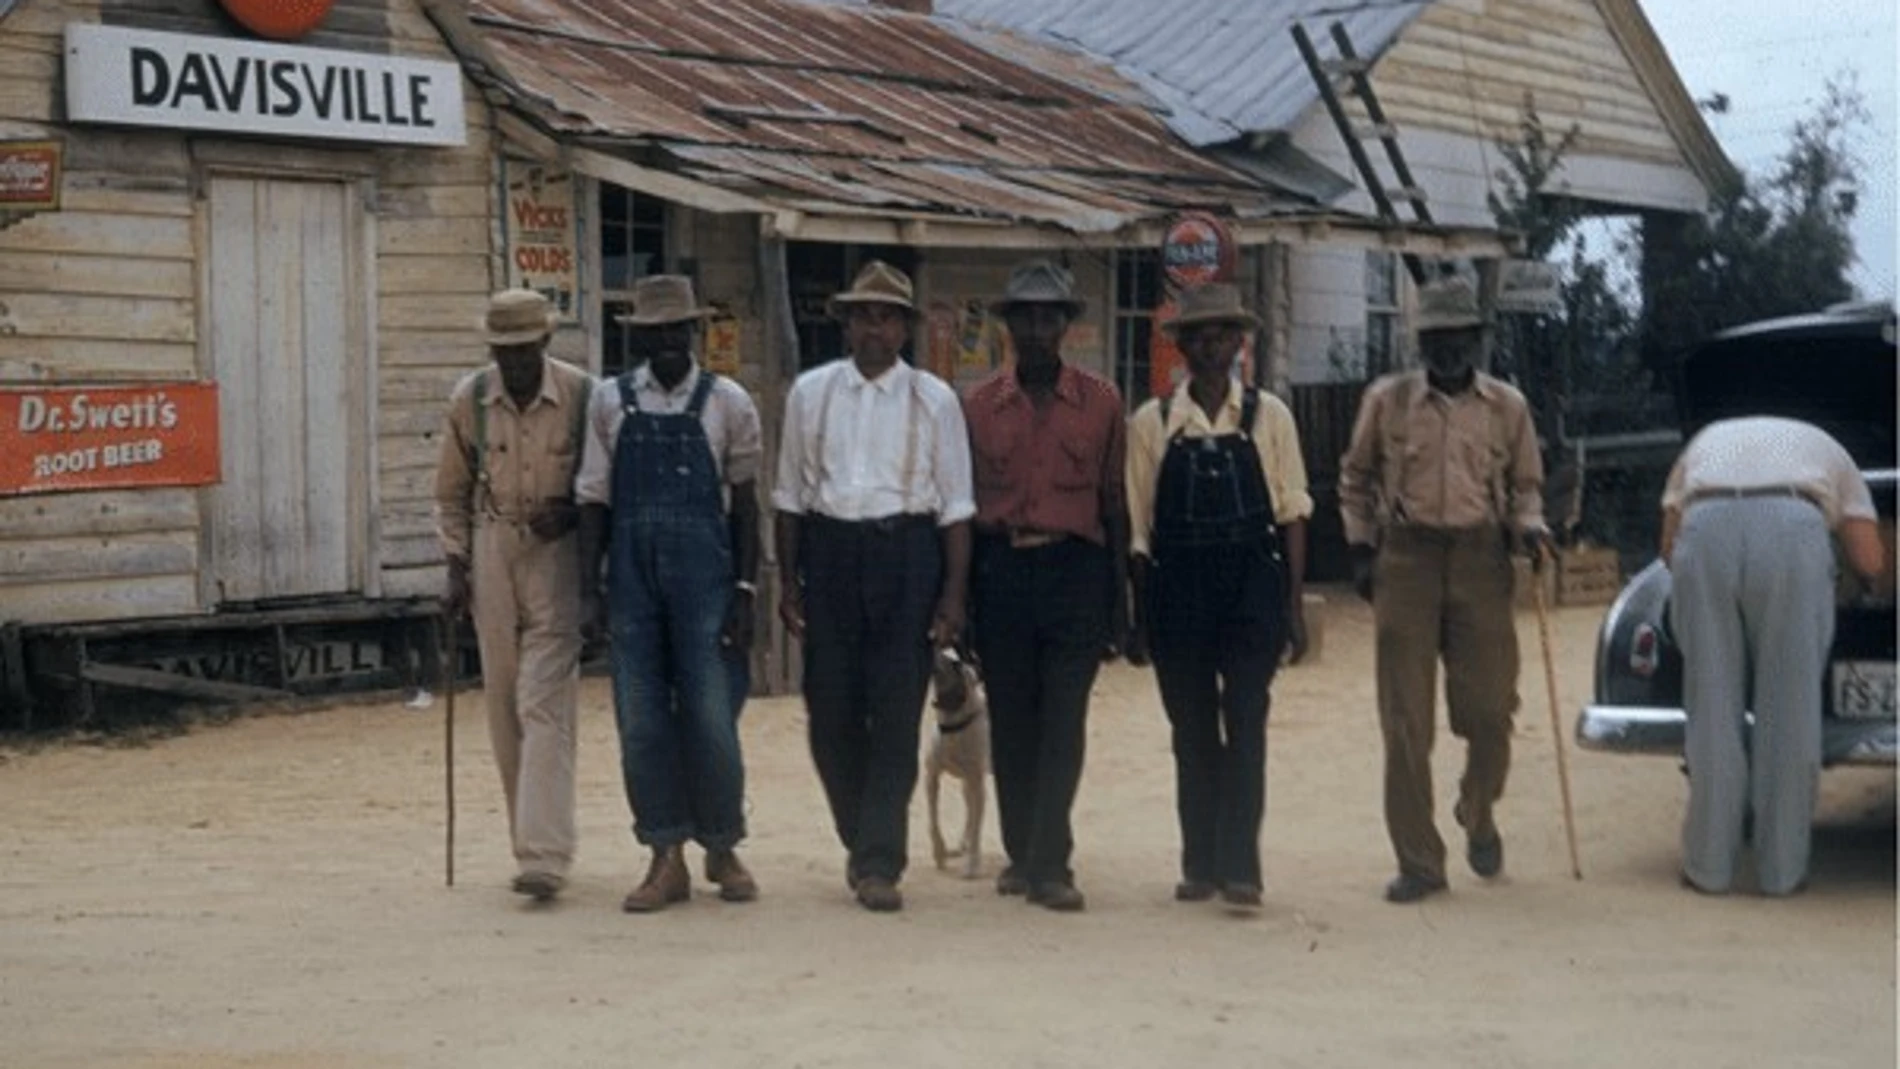 Fotografía de algunos de los sujetos víctima del experimento Tuskegee.